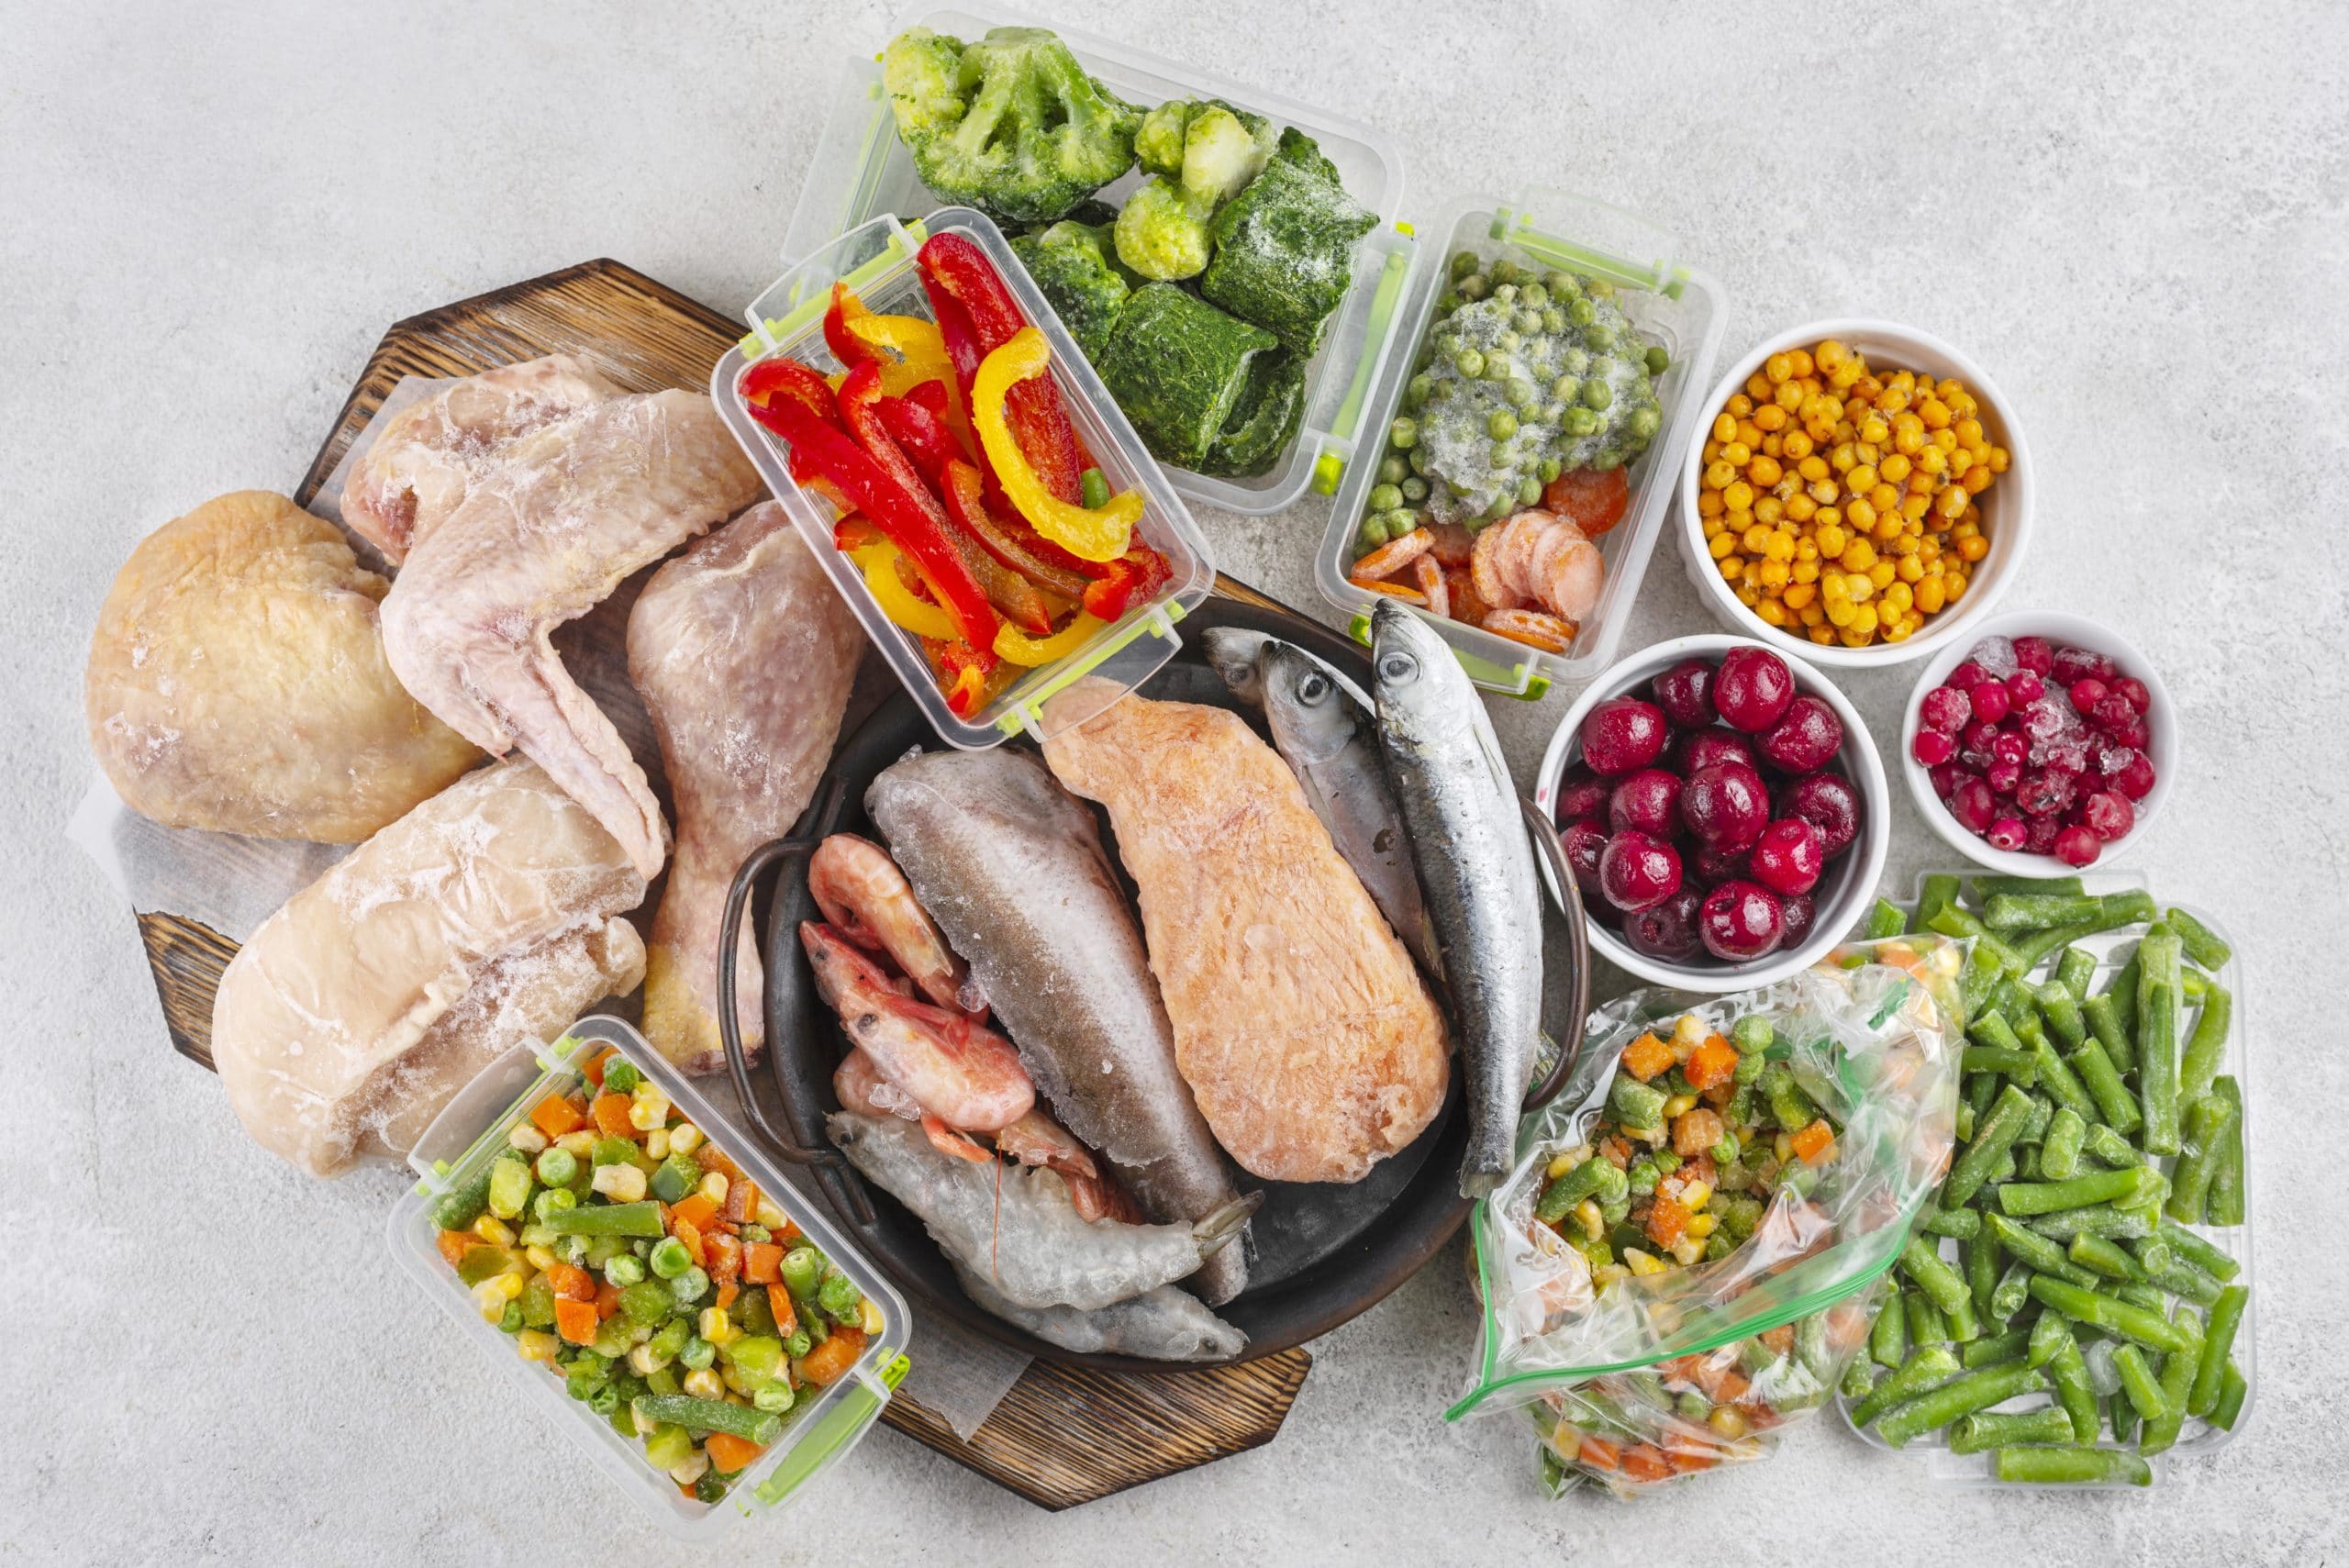 contaminación de los alimentos; imagen de varios productos alimenticios como pollo, legumbres y verduras